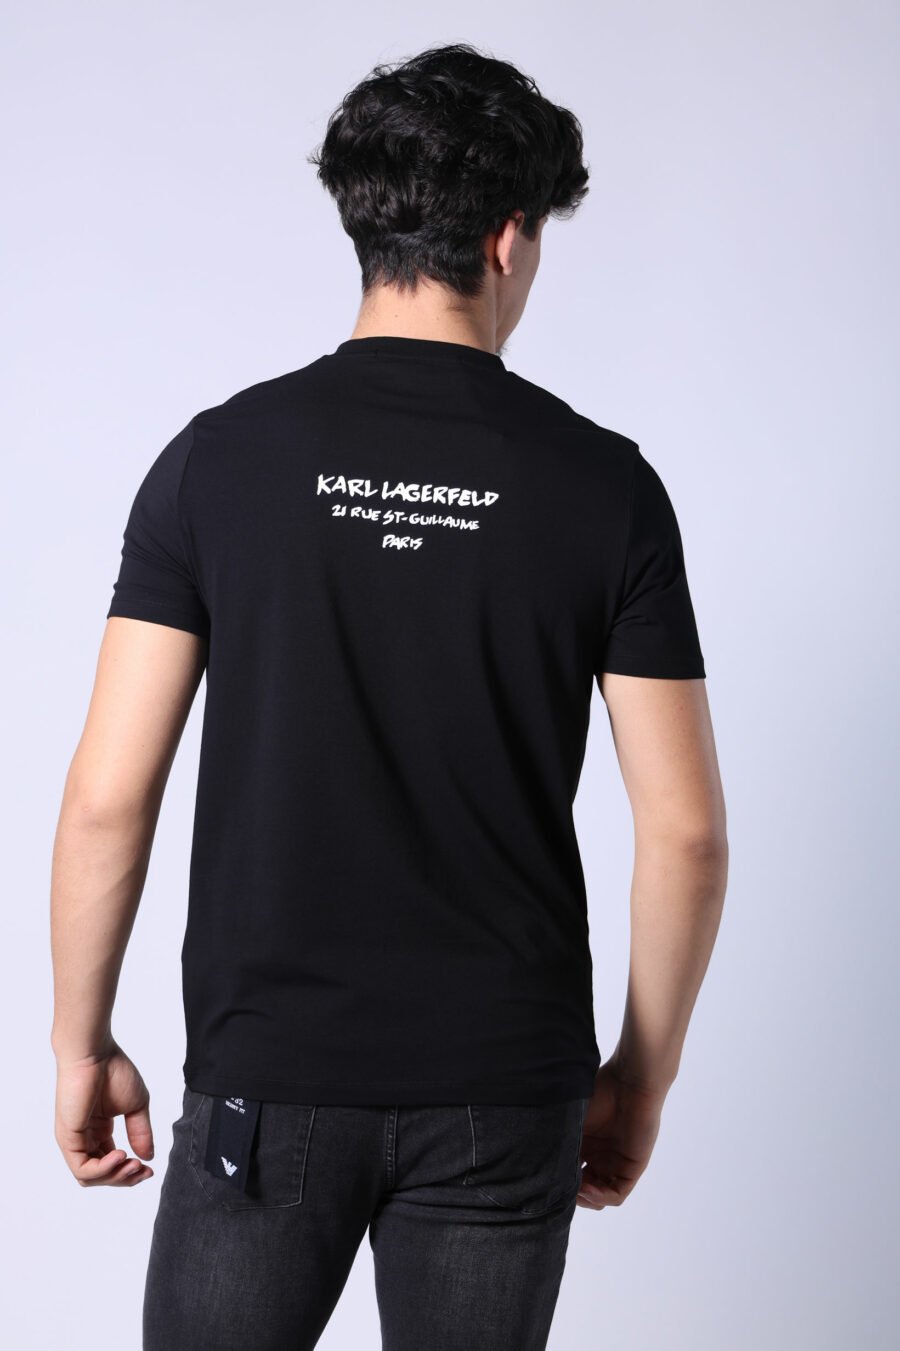 T-shirt preta com perfil de camuflagem "karl" - Untitled Catalog 05803